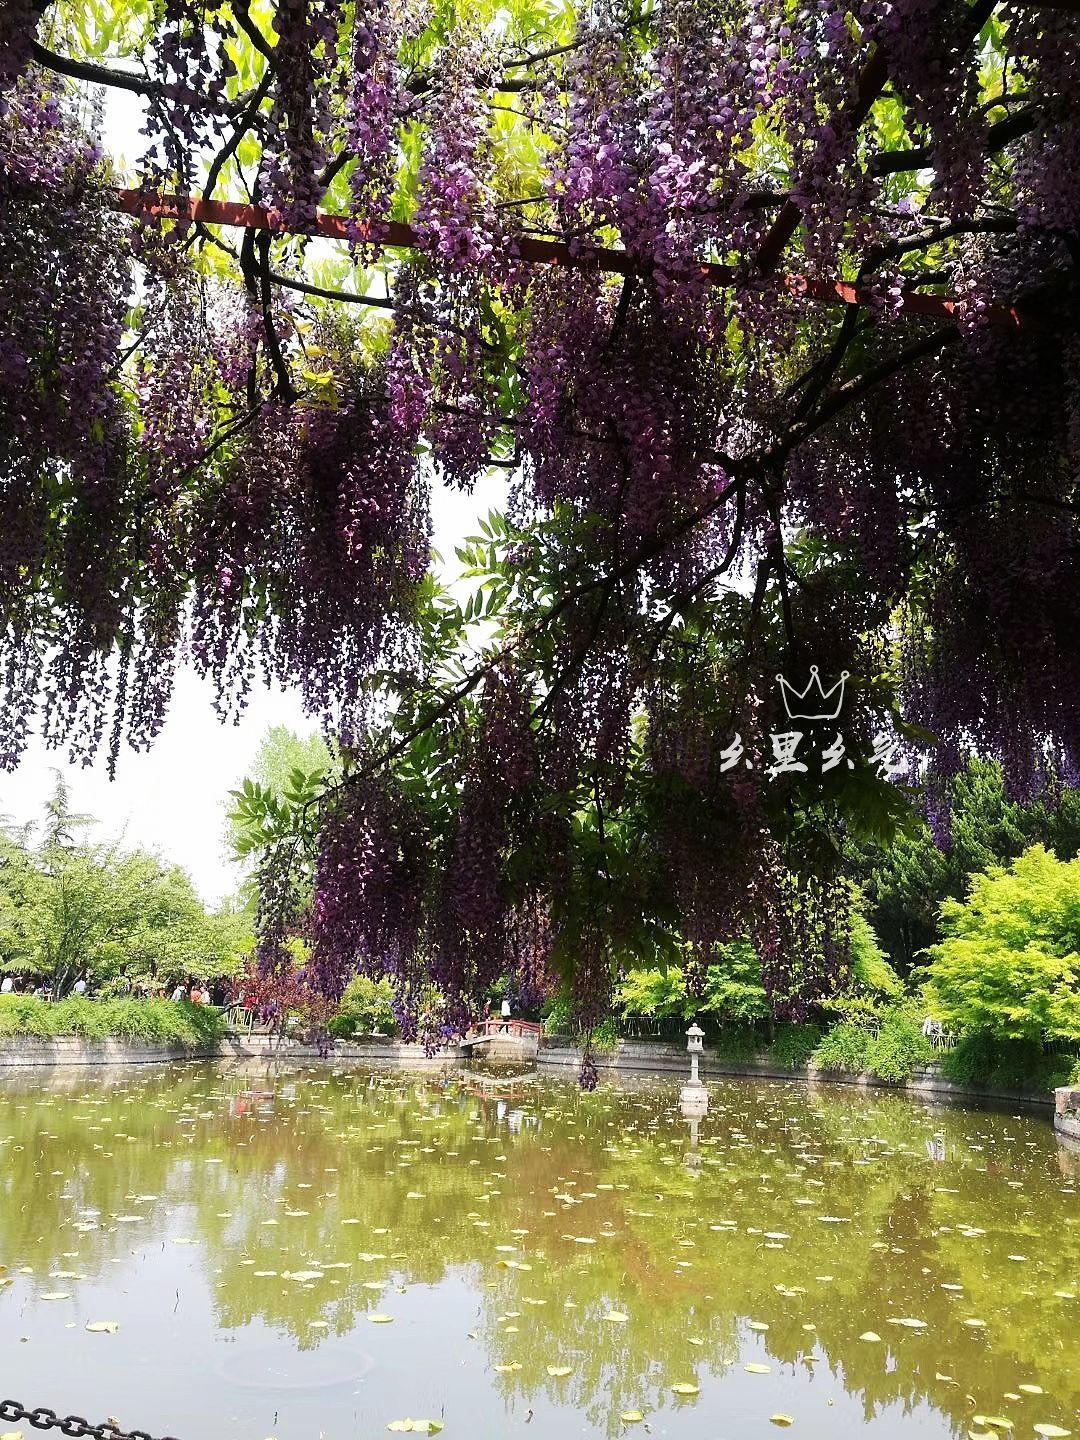 上海嘉定紫藤园步入盛花期 - 植保 - 园林网